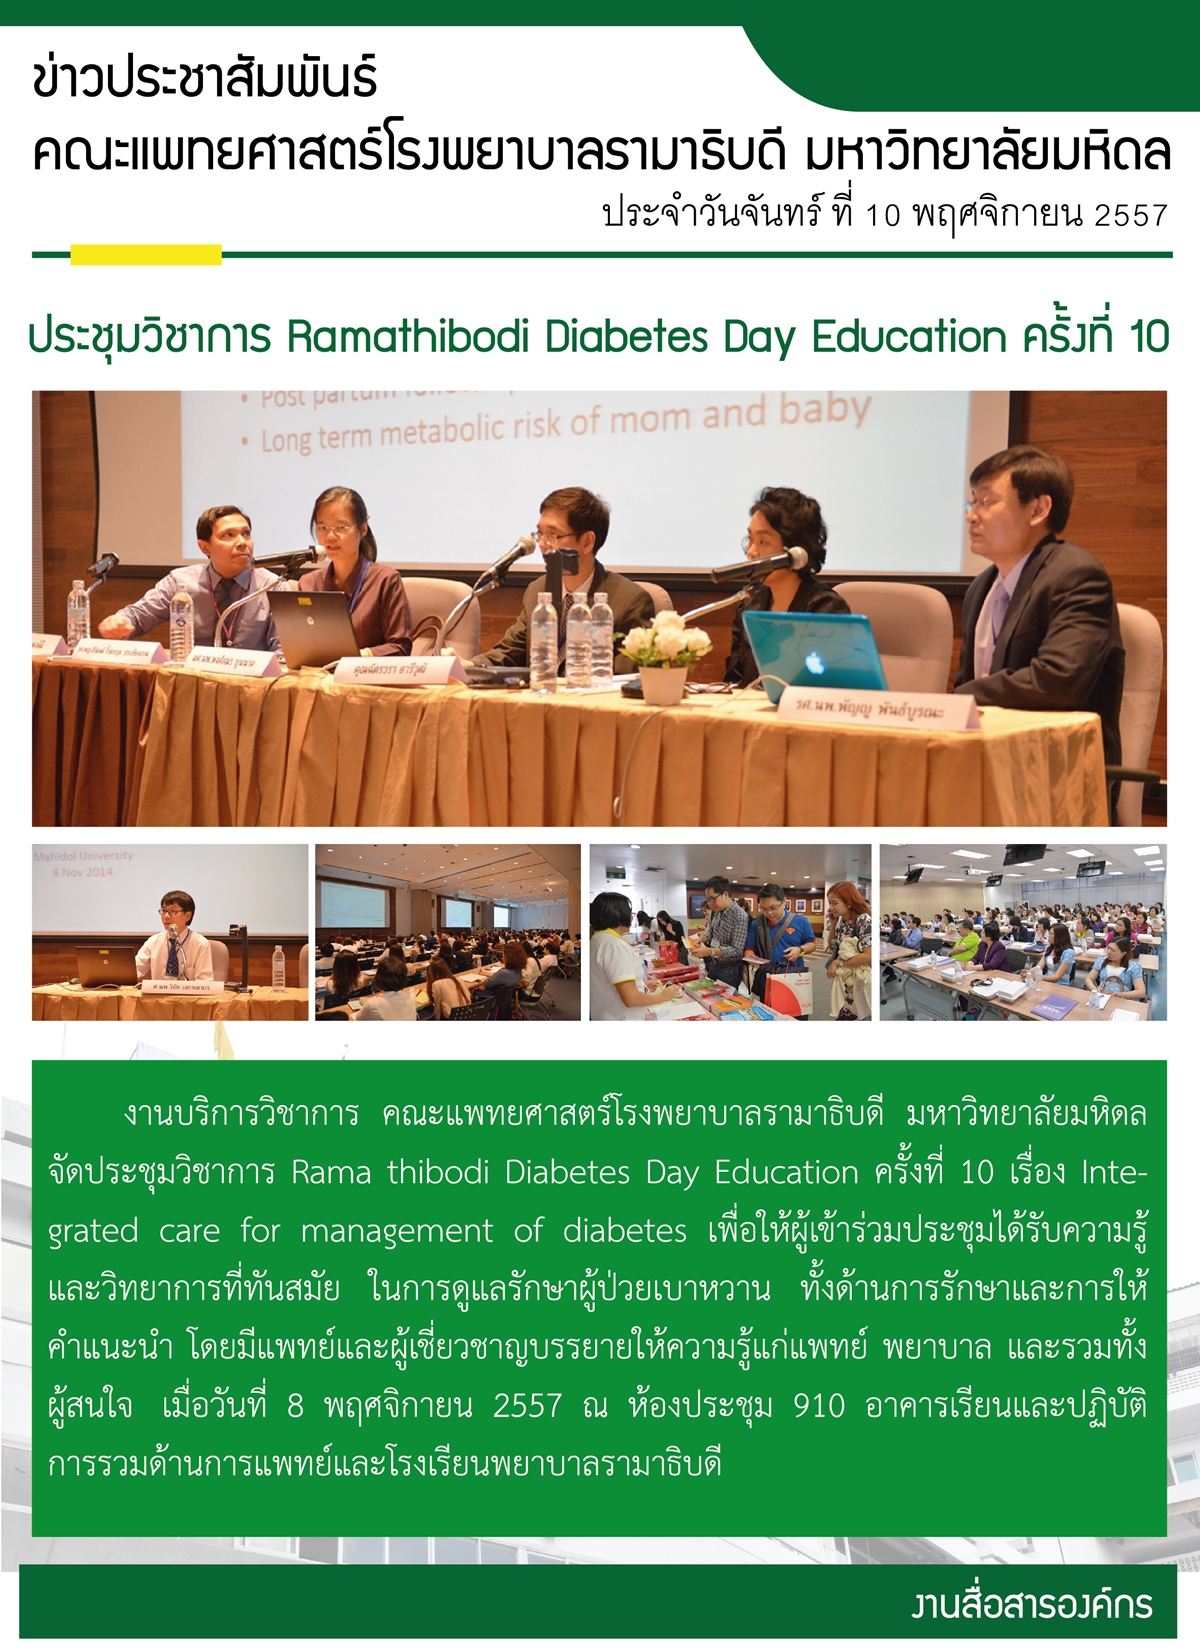 ประชุมวิชาการ Ramathibodi Diabetes Day Education ครั้งที่ 10